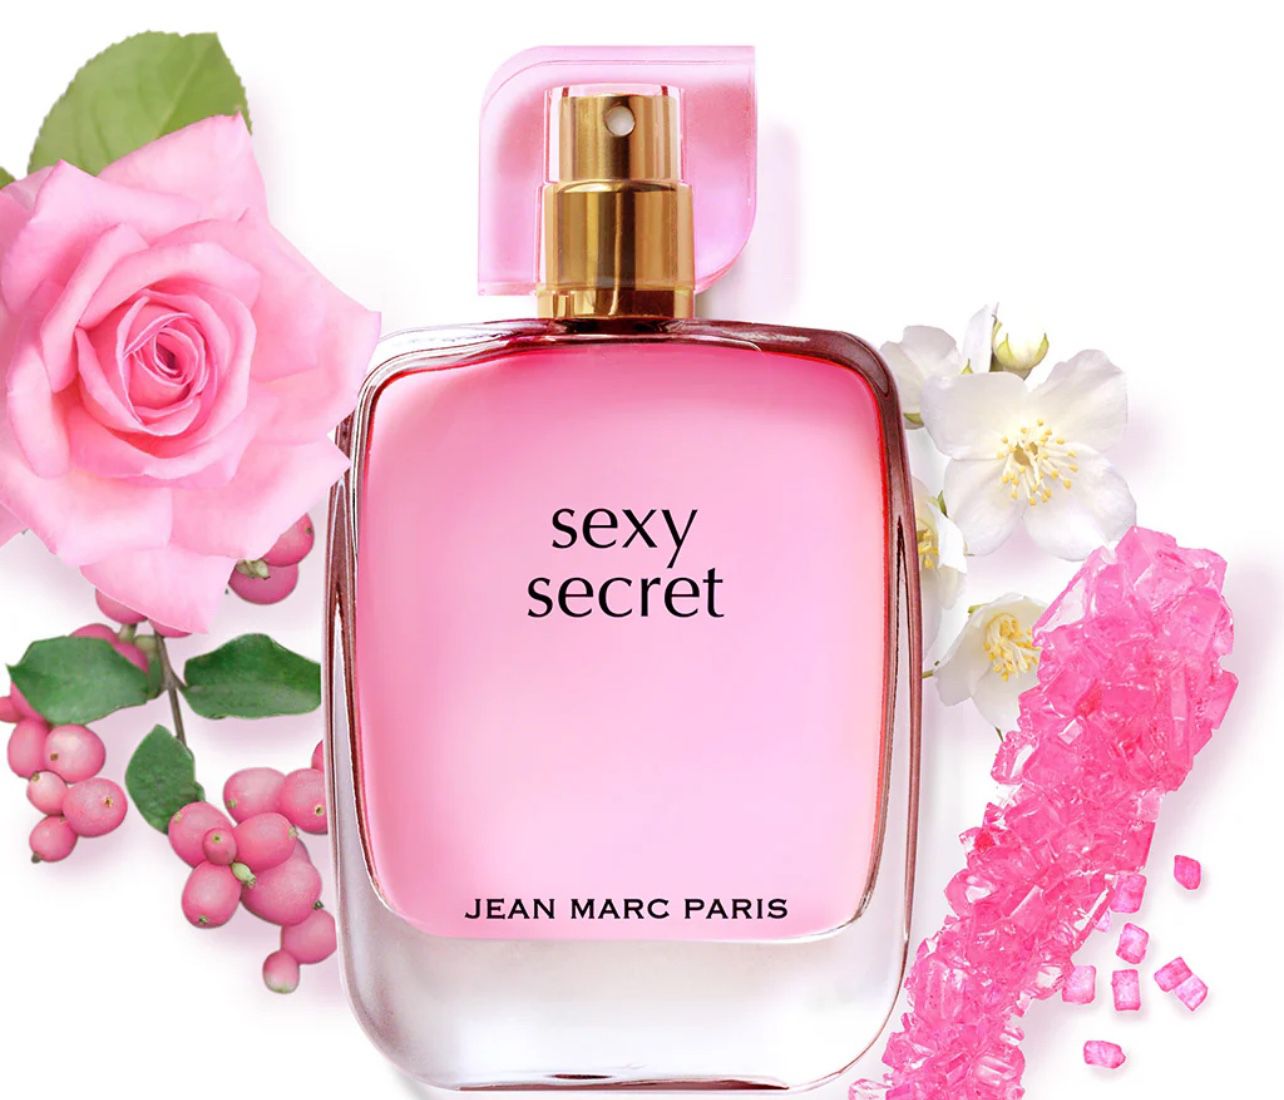 Jean Marc Paris Sexy Secret 50ml Perfume Parfum Cologne Fragrance 